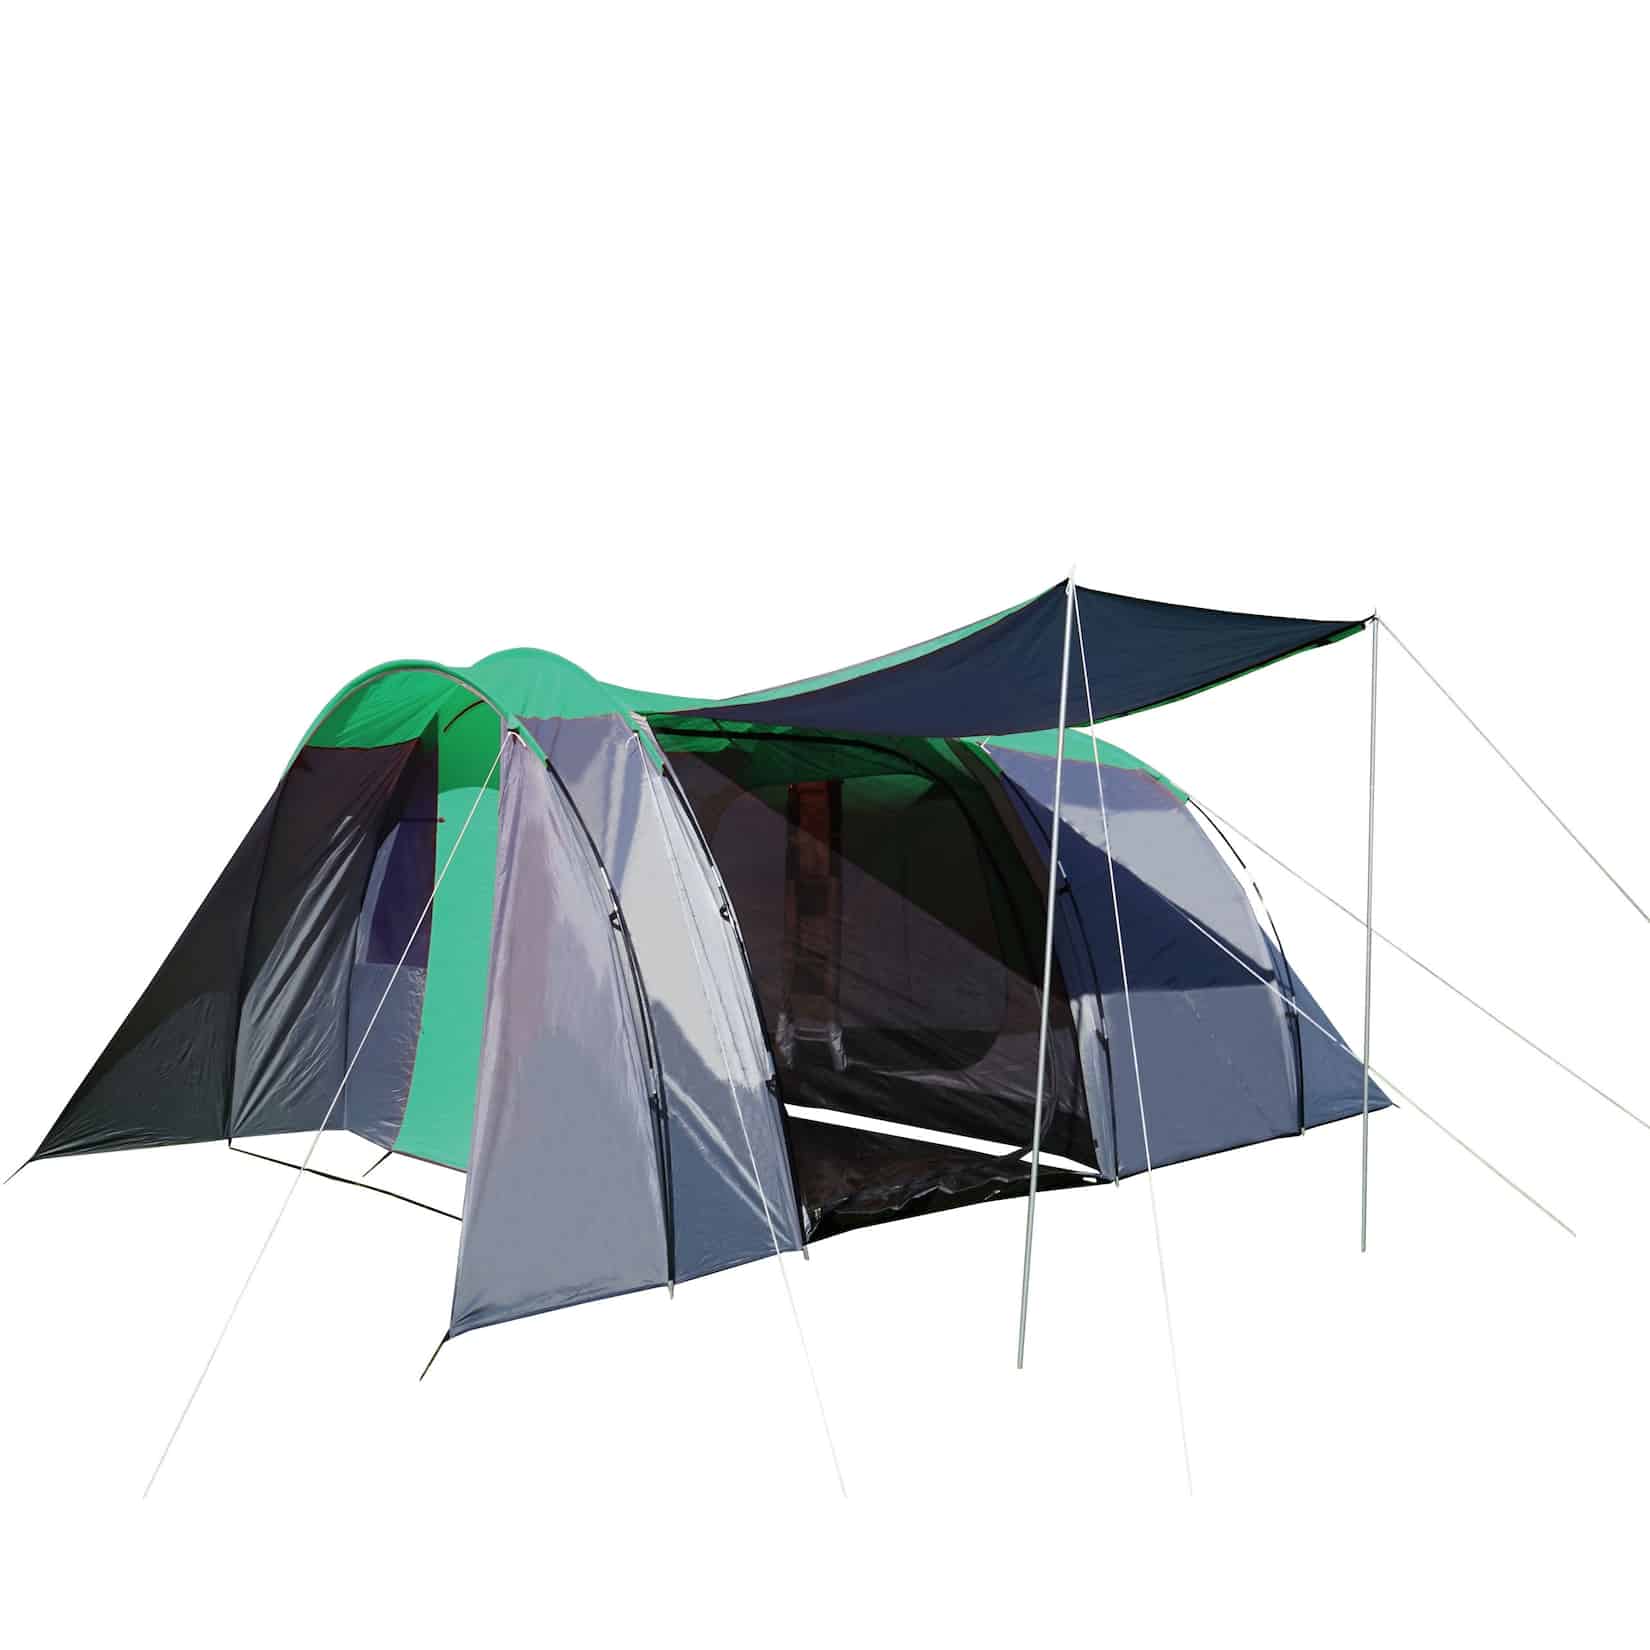 Campingzelt MCW-A99, 6-Mann Zelt Kuppelzelt Festival-Zelt, 6 Personen ~  grün/grau online kaufen bei